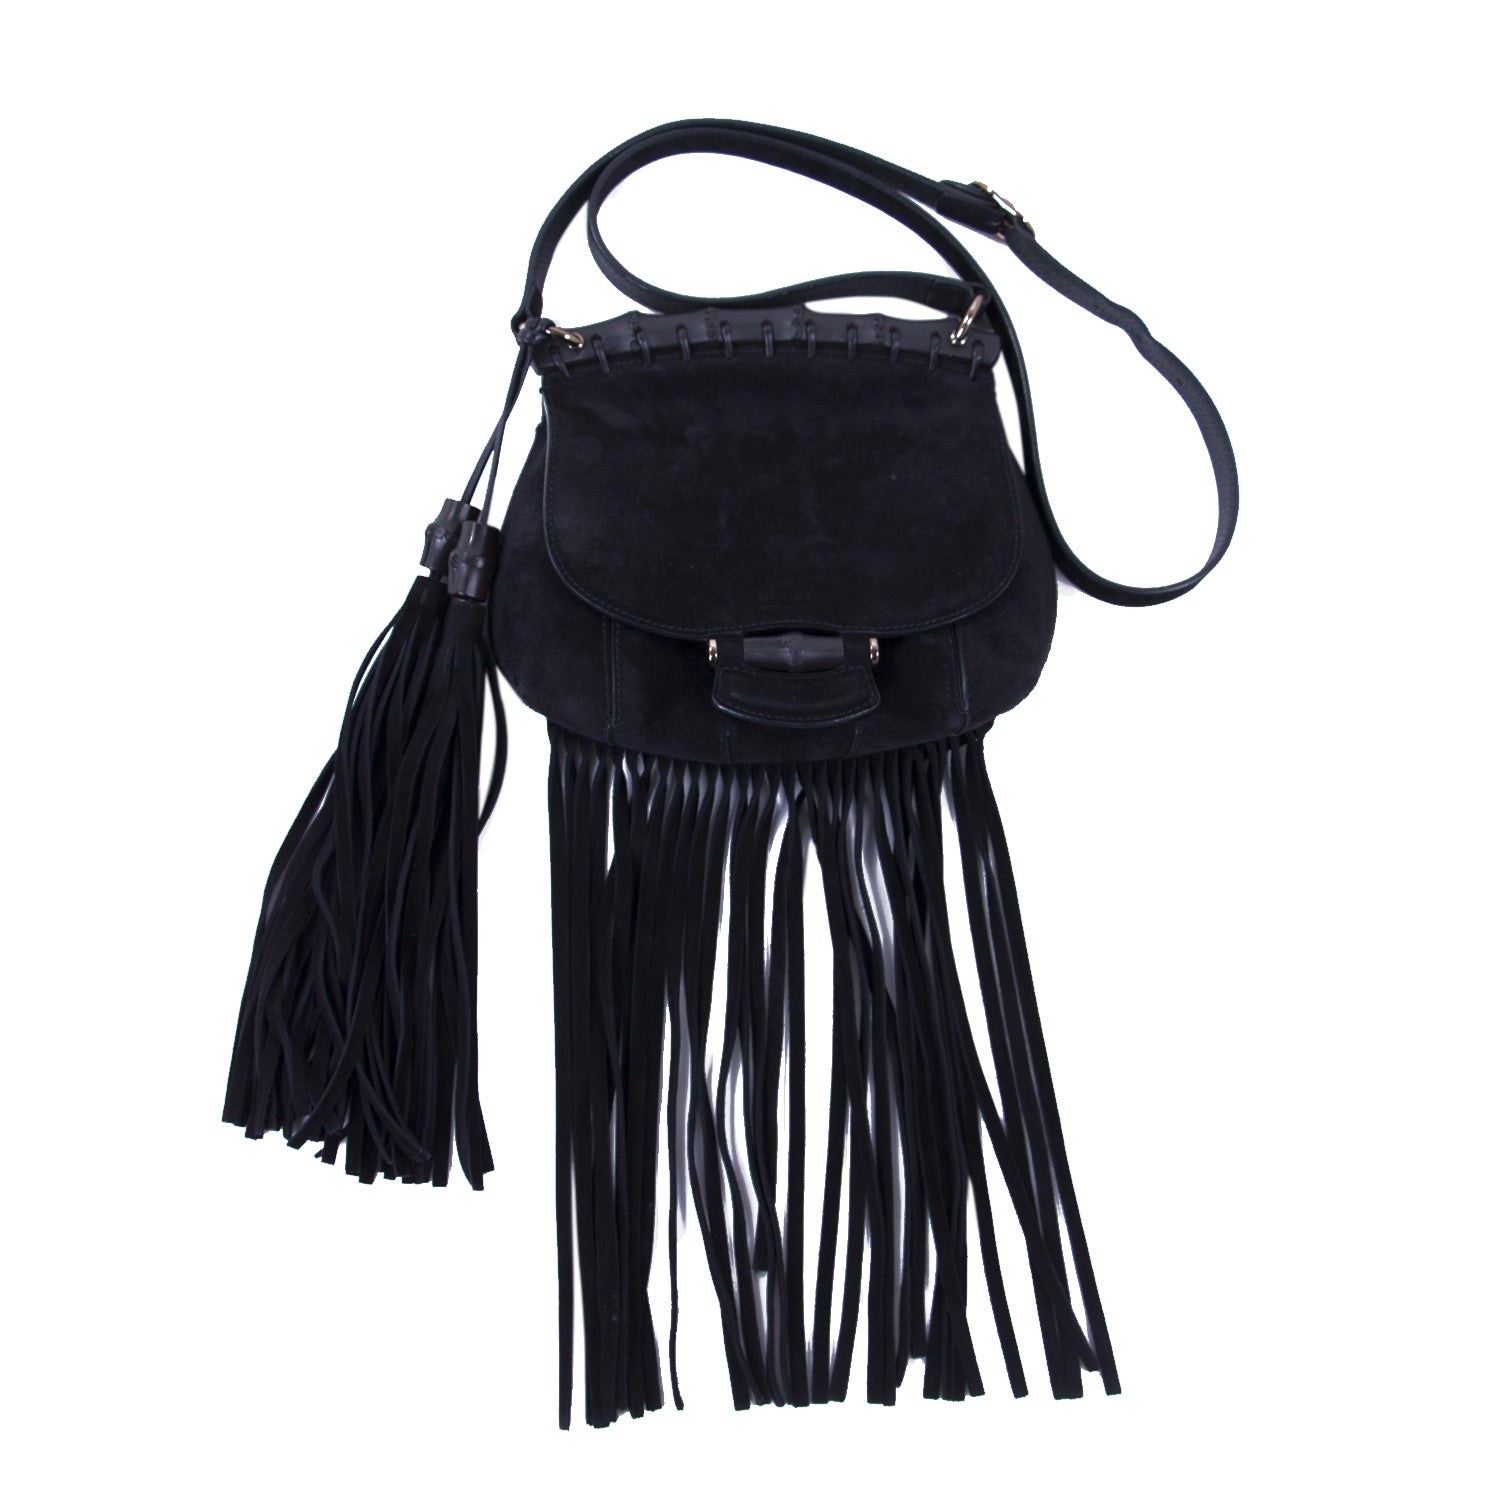 Shop authentic Gucci Nouveau Black Fringe Suede Bag at revogue for just ...